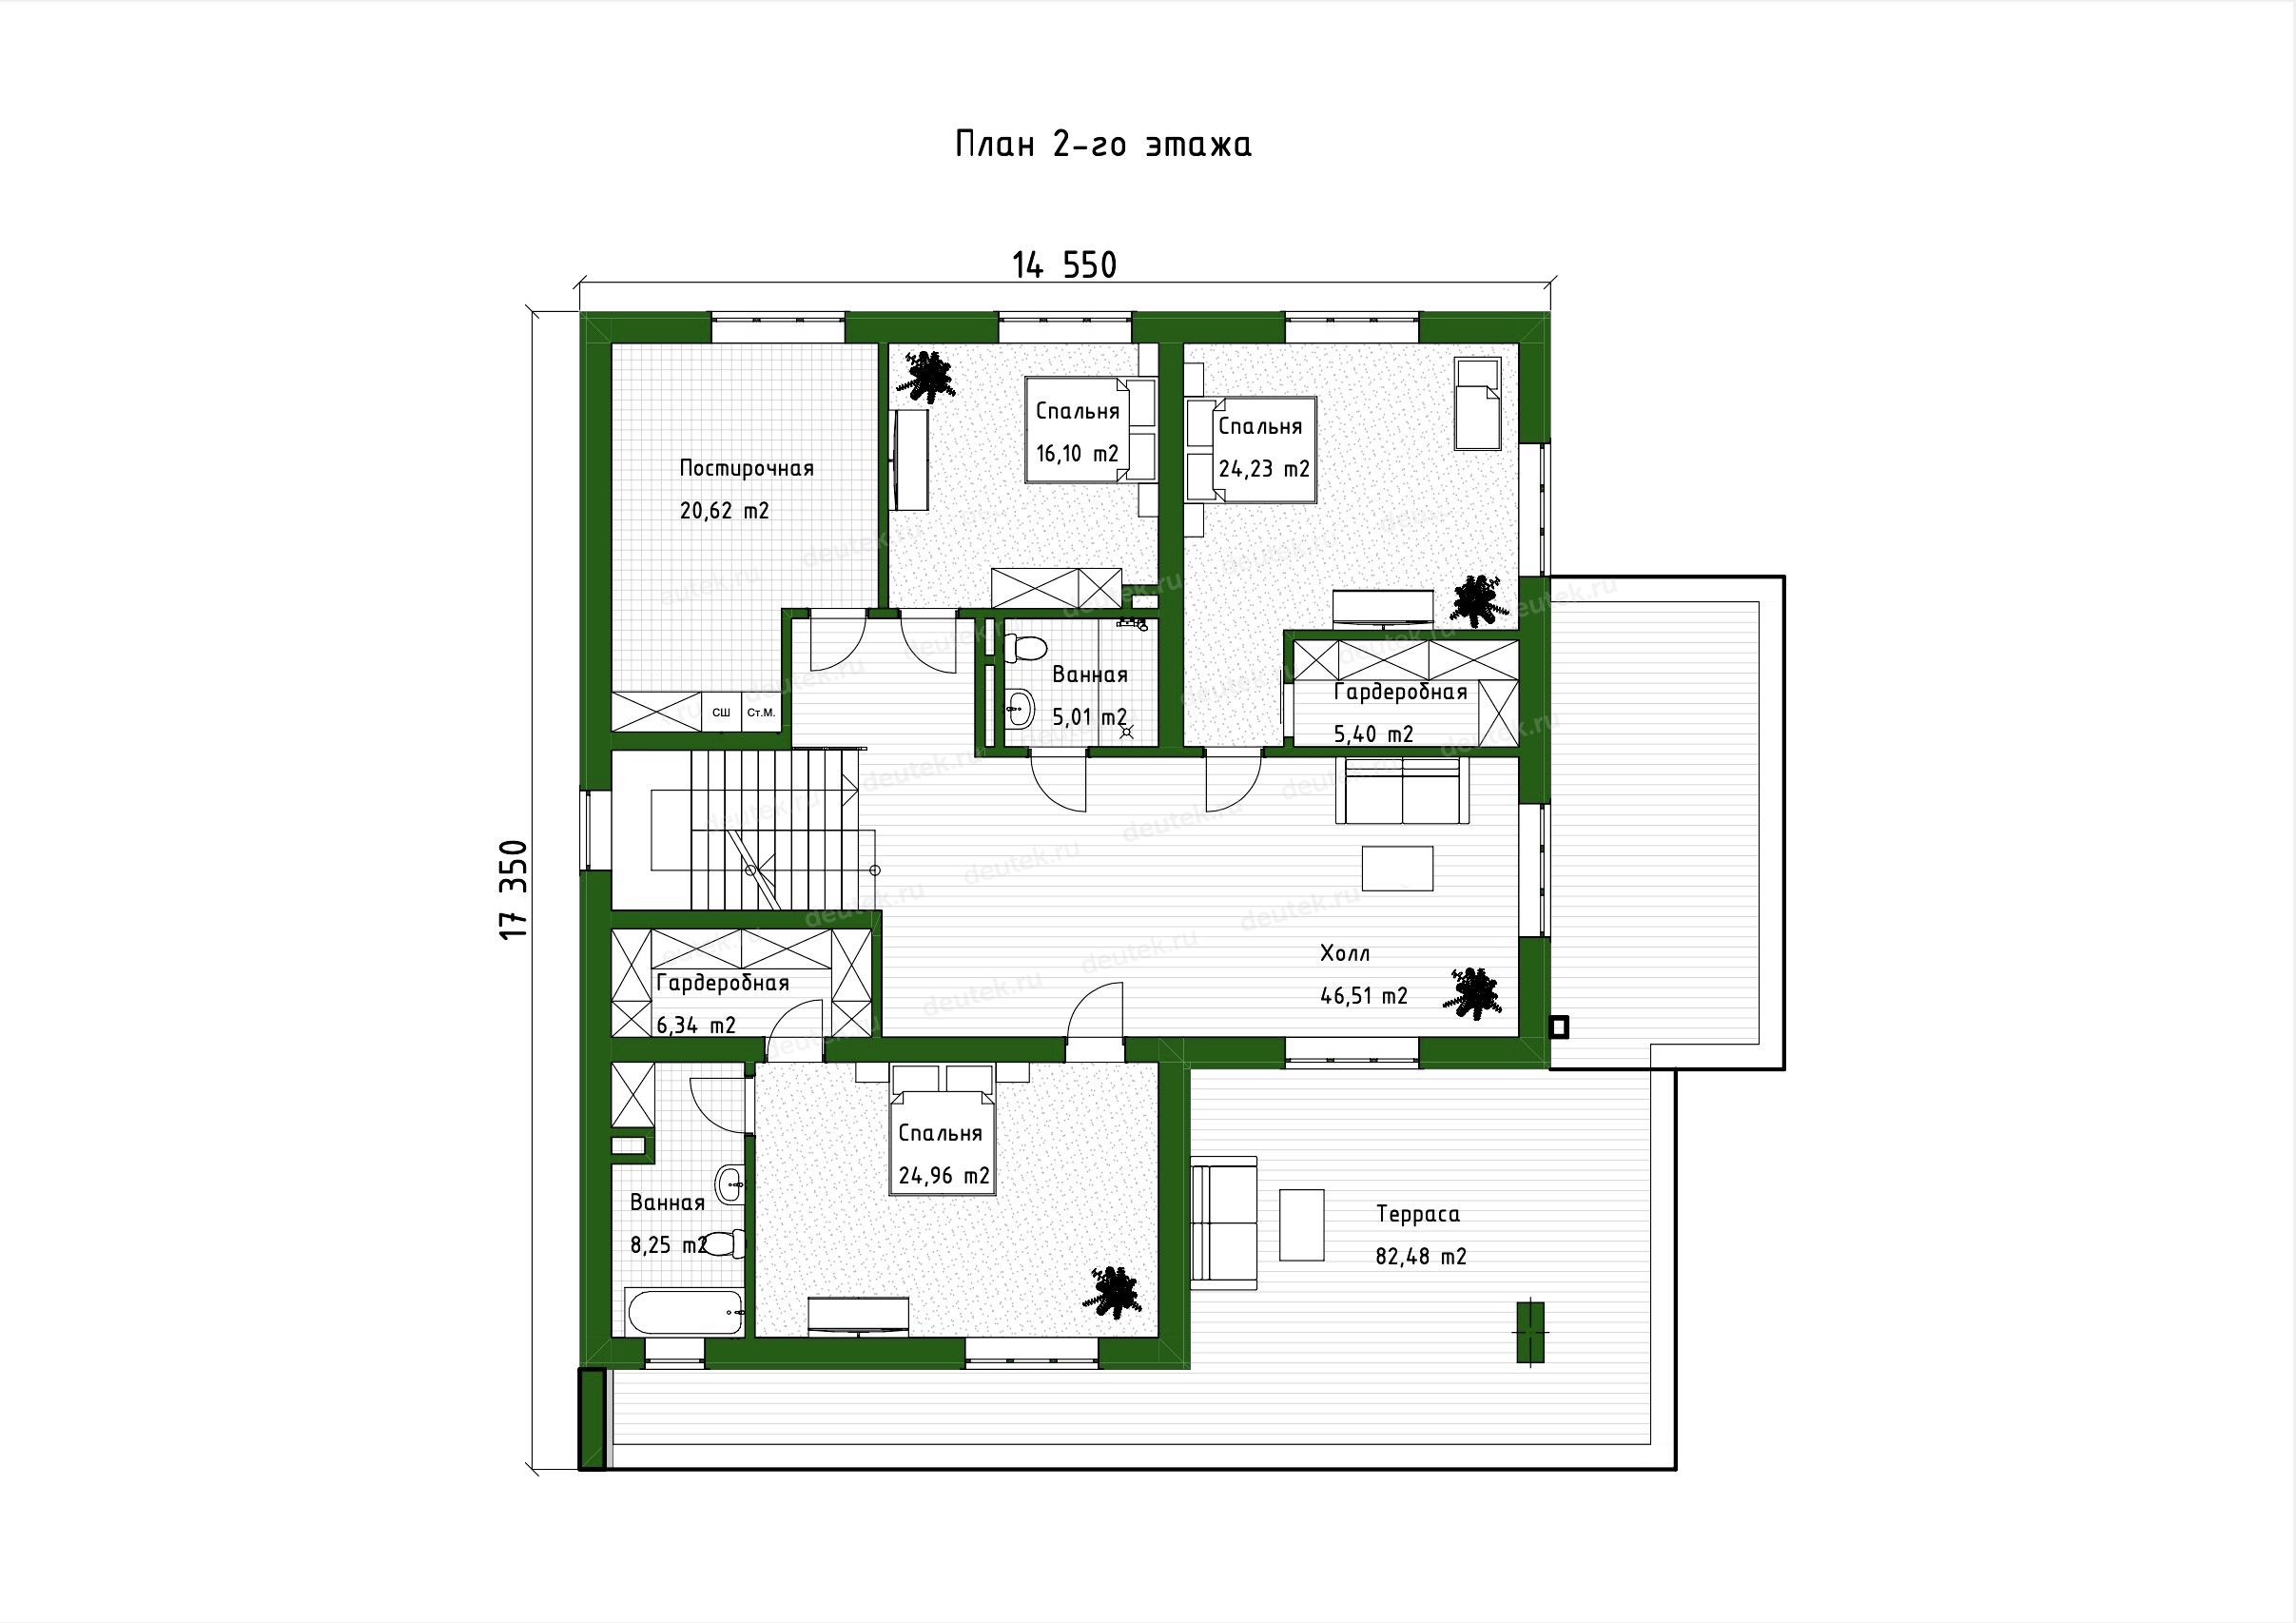 Стиль хай-тек в интерьере квартиры: как объединить комфорт и высокие технологии